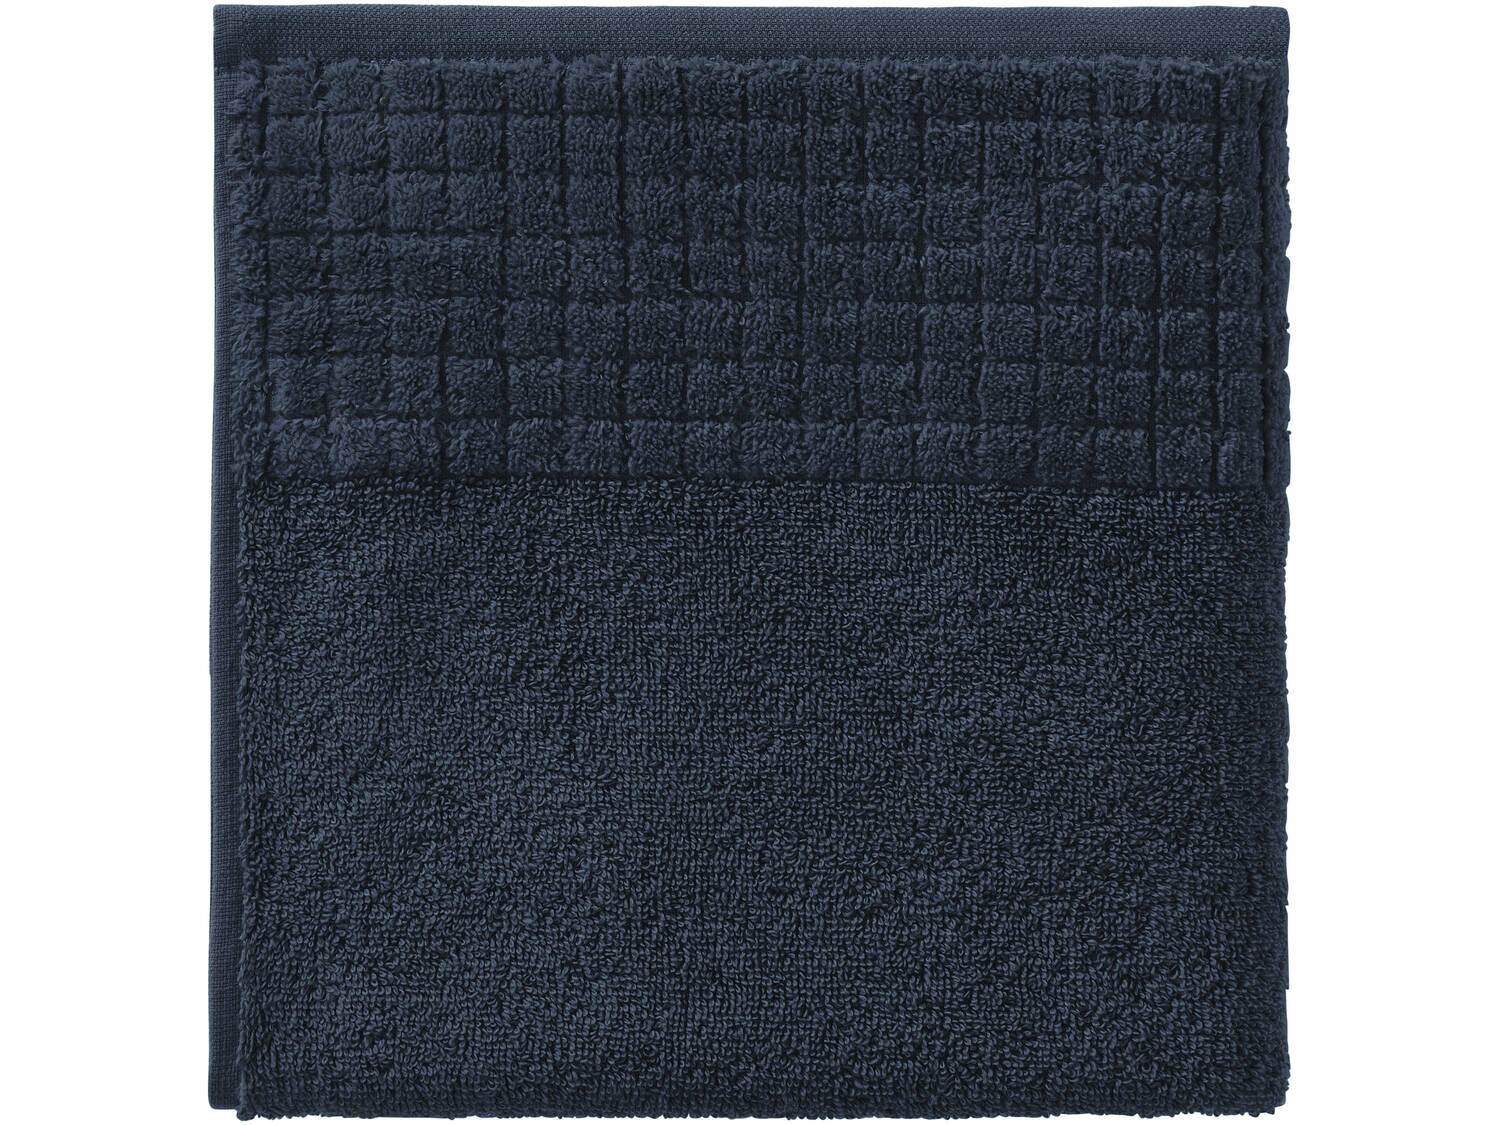 Ręcznik 50 x 100 cm Miomare, cena 9,99 PLN 
6 kolorów 
- 100% bawełny
- miękkie ...